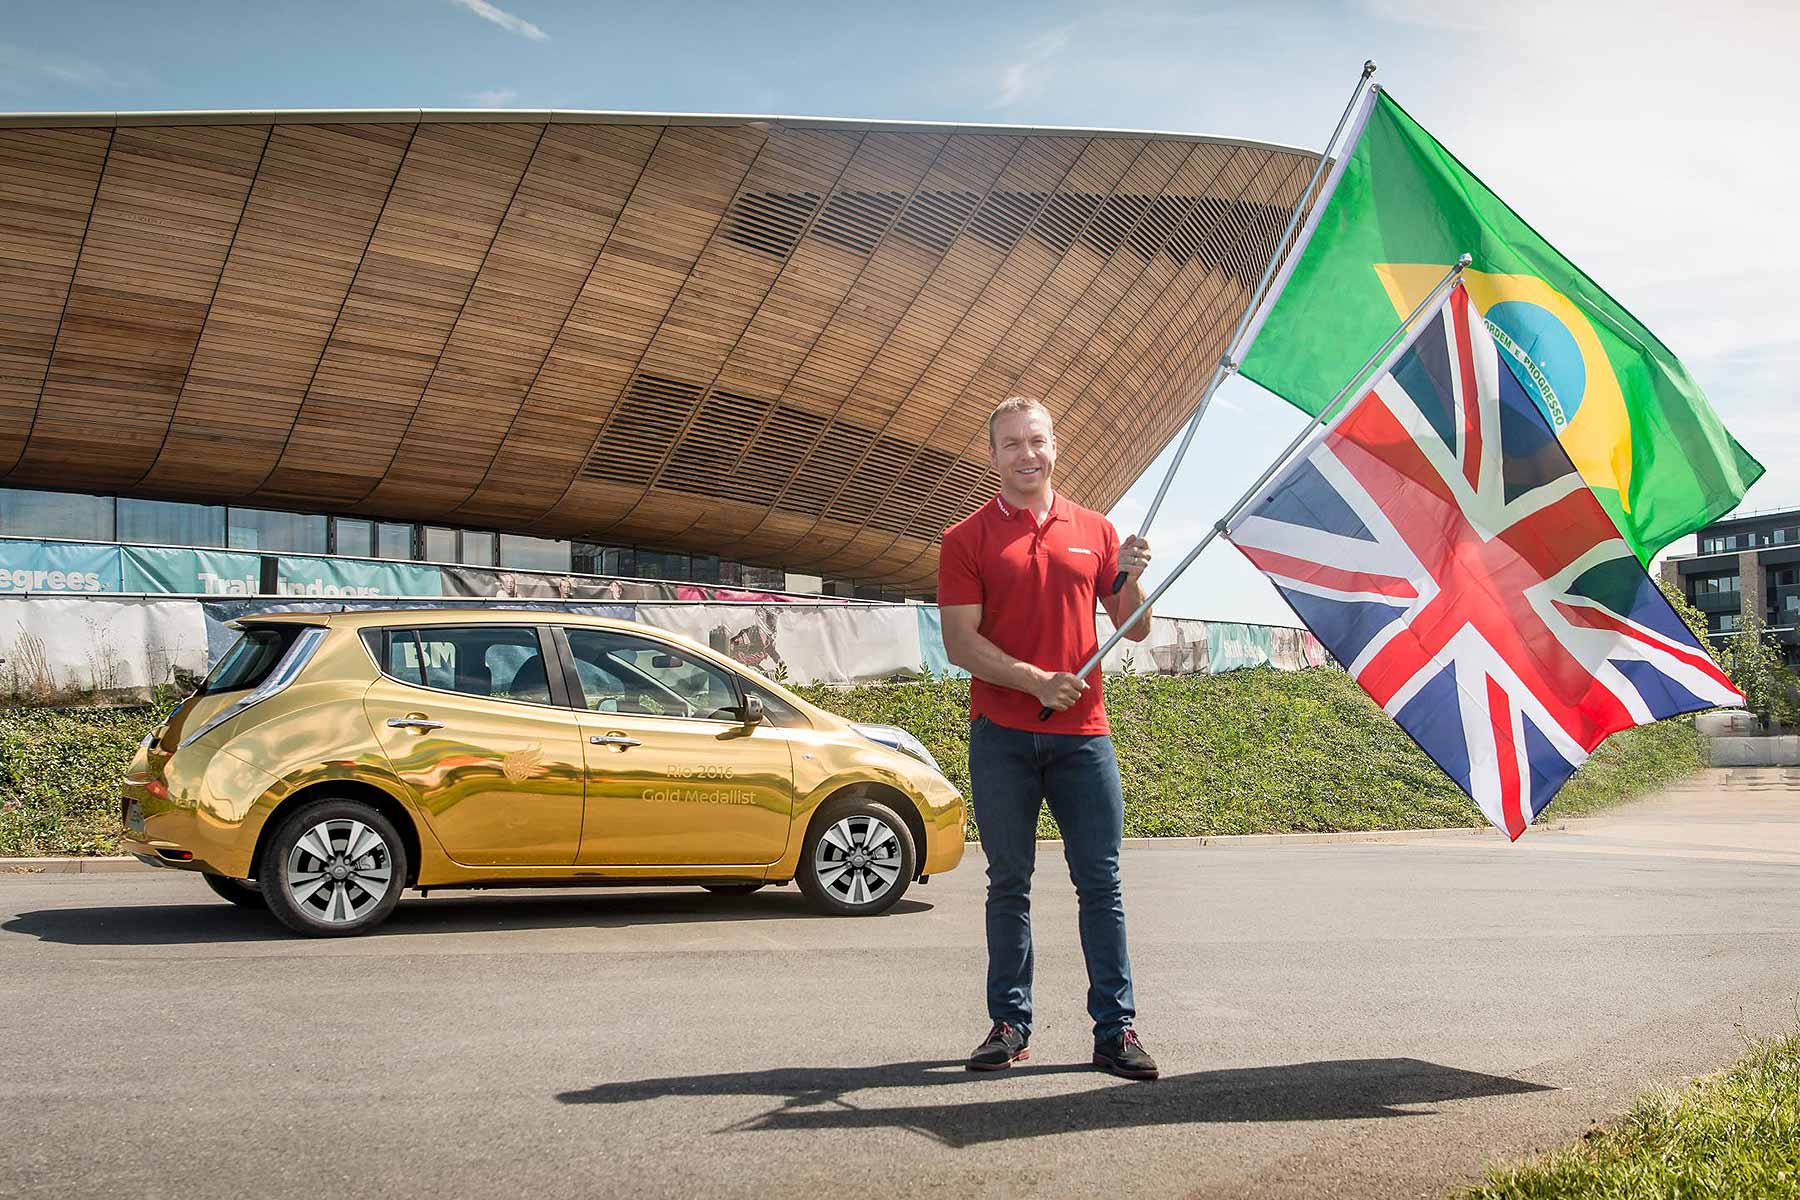 المپیک ریو 2016؛ شرکت نیسان به هر کدام از قهرمانان خود، یک خودروی طلایی خواهد داد